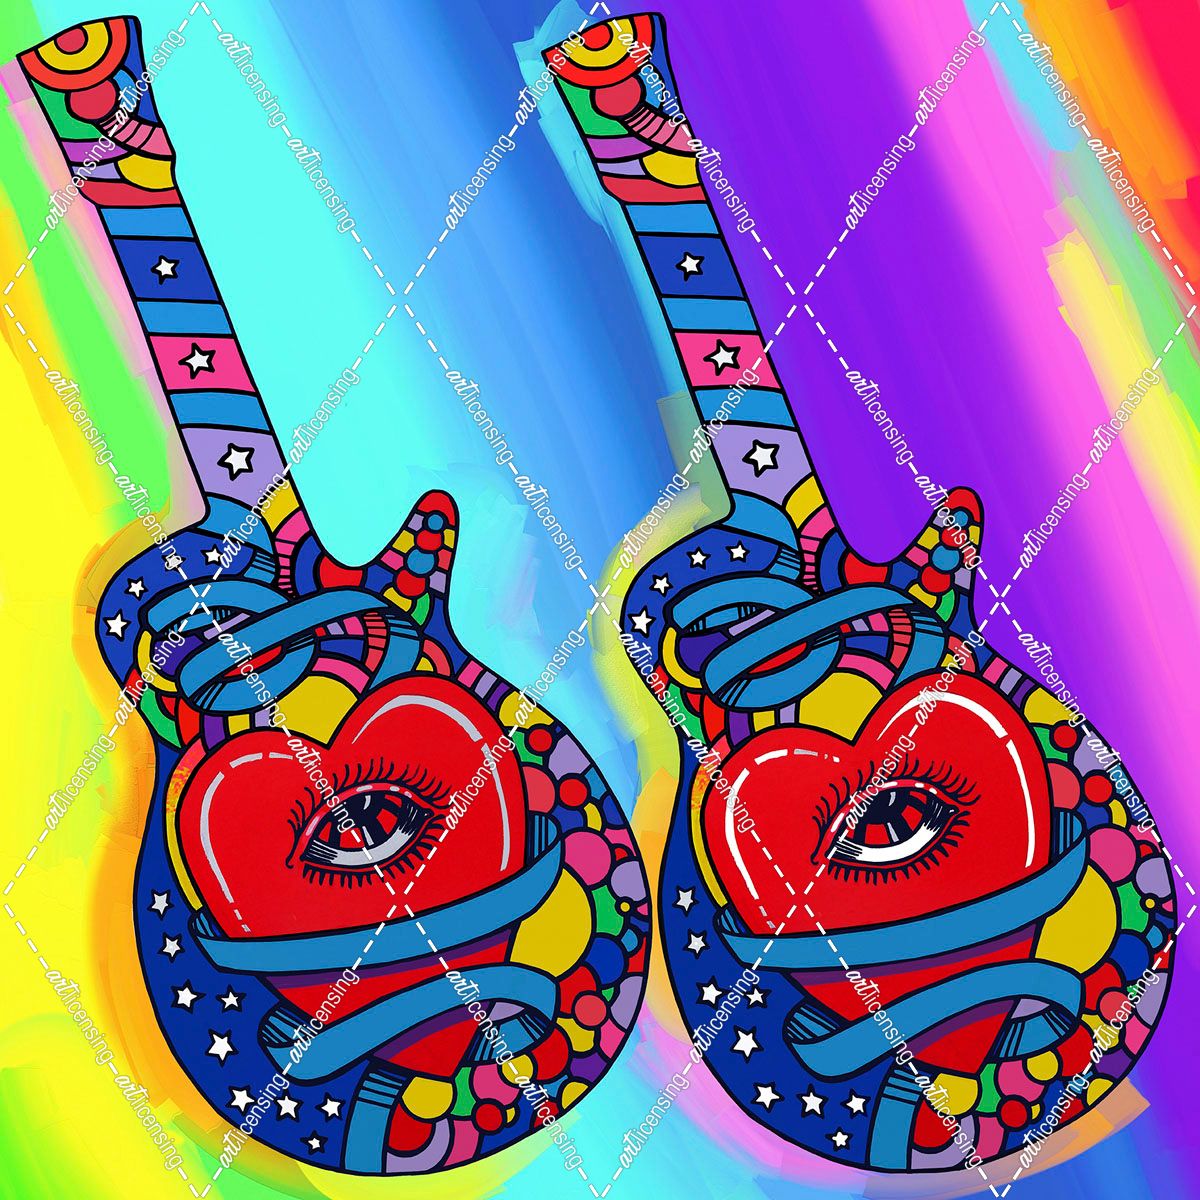 Guitars-heart-eye